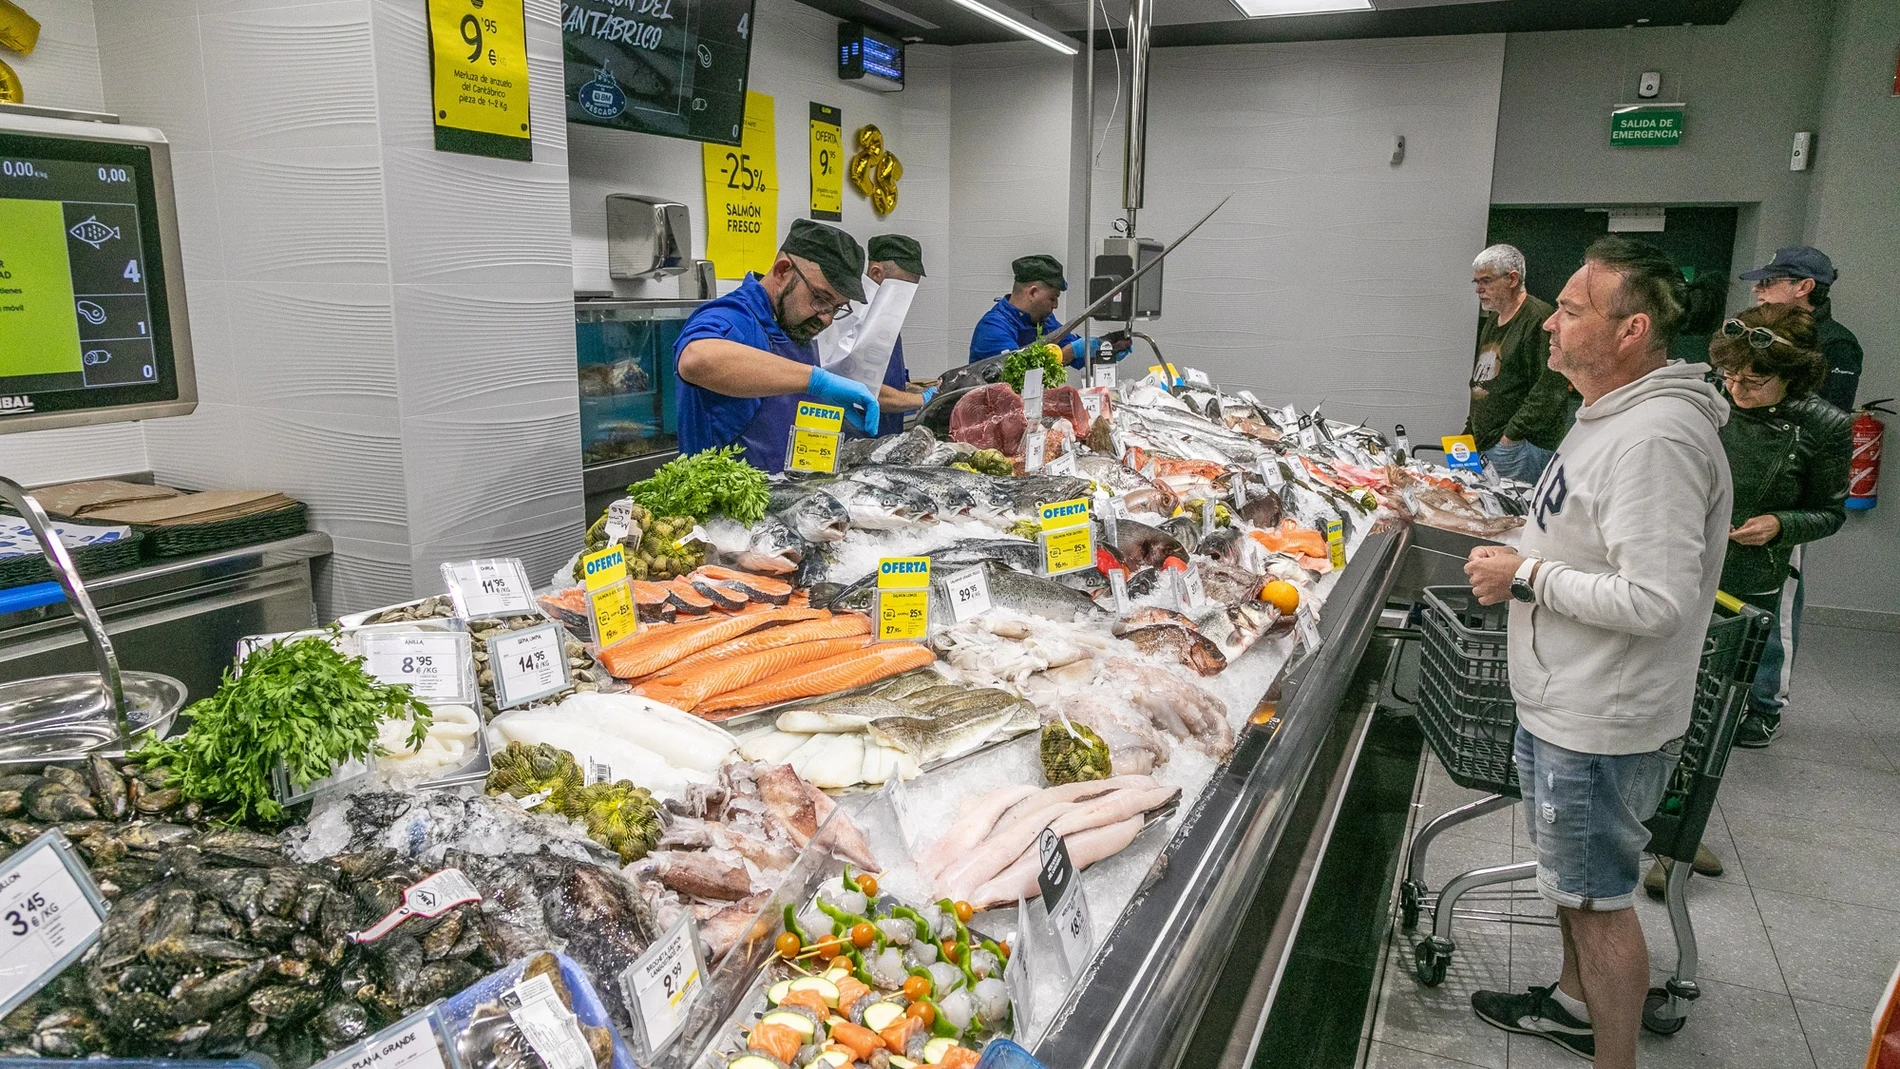 Economía.- BM Supermercados lanza una cesta de frescos a mitad de precio durante dos meses frente a la inflación